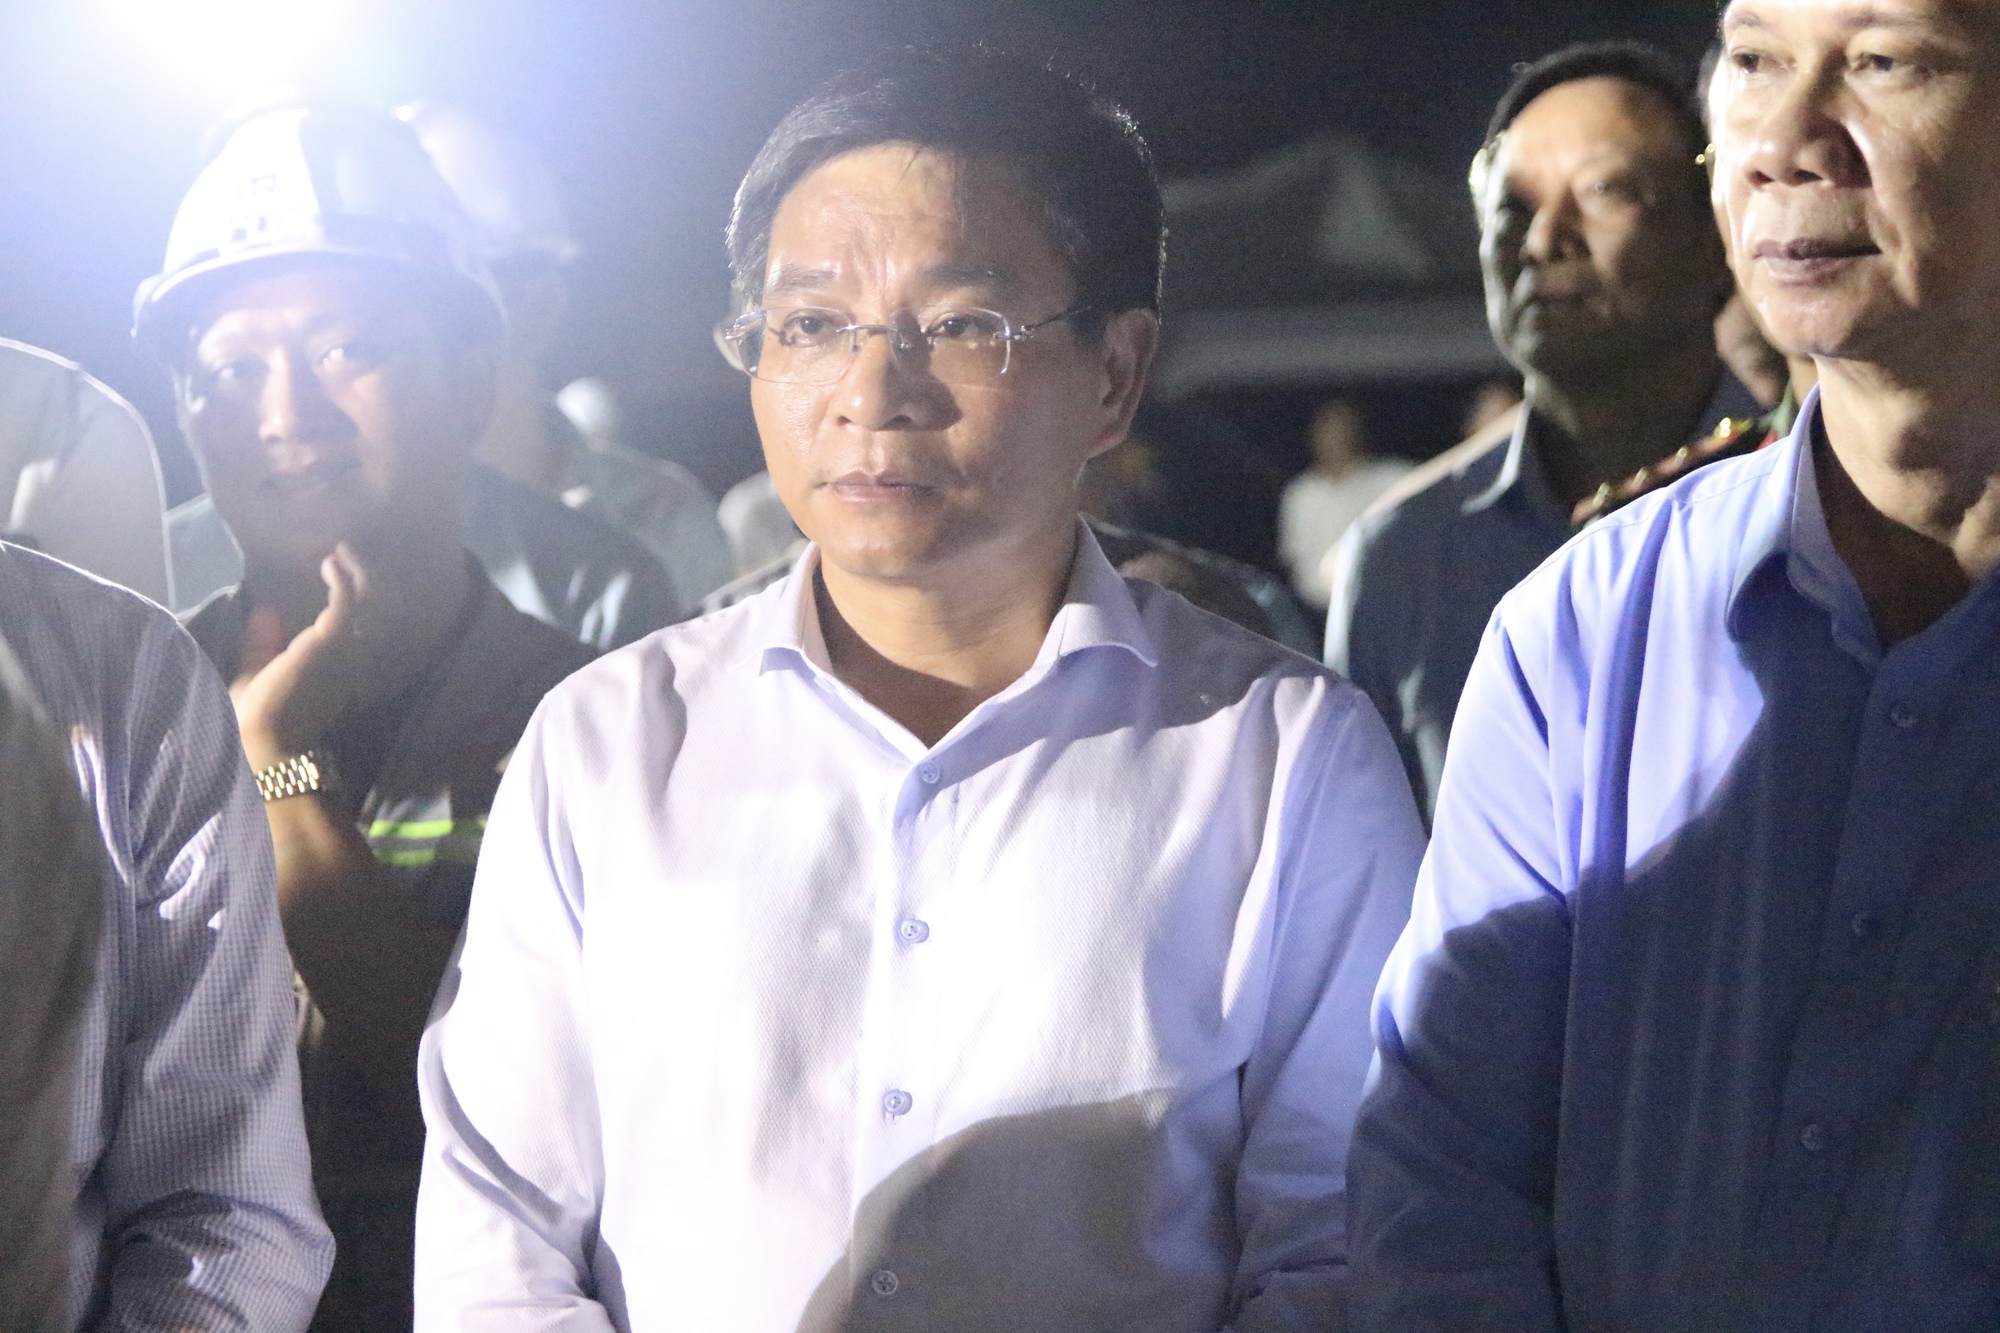 Chùm ảnh Thủ tướng Phạm Minh Chính kiểm tra cầu Rạch Miễu 2 trong đêm- Ảnh 4.